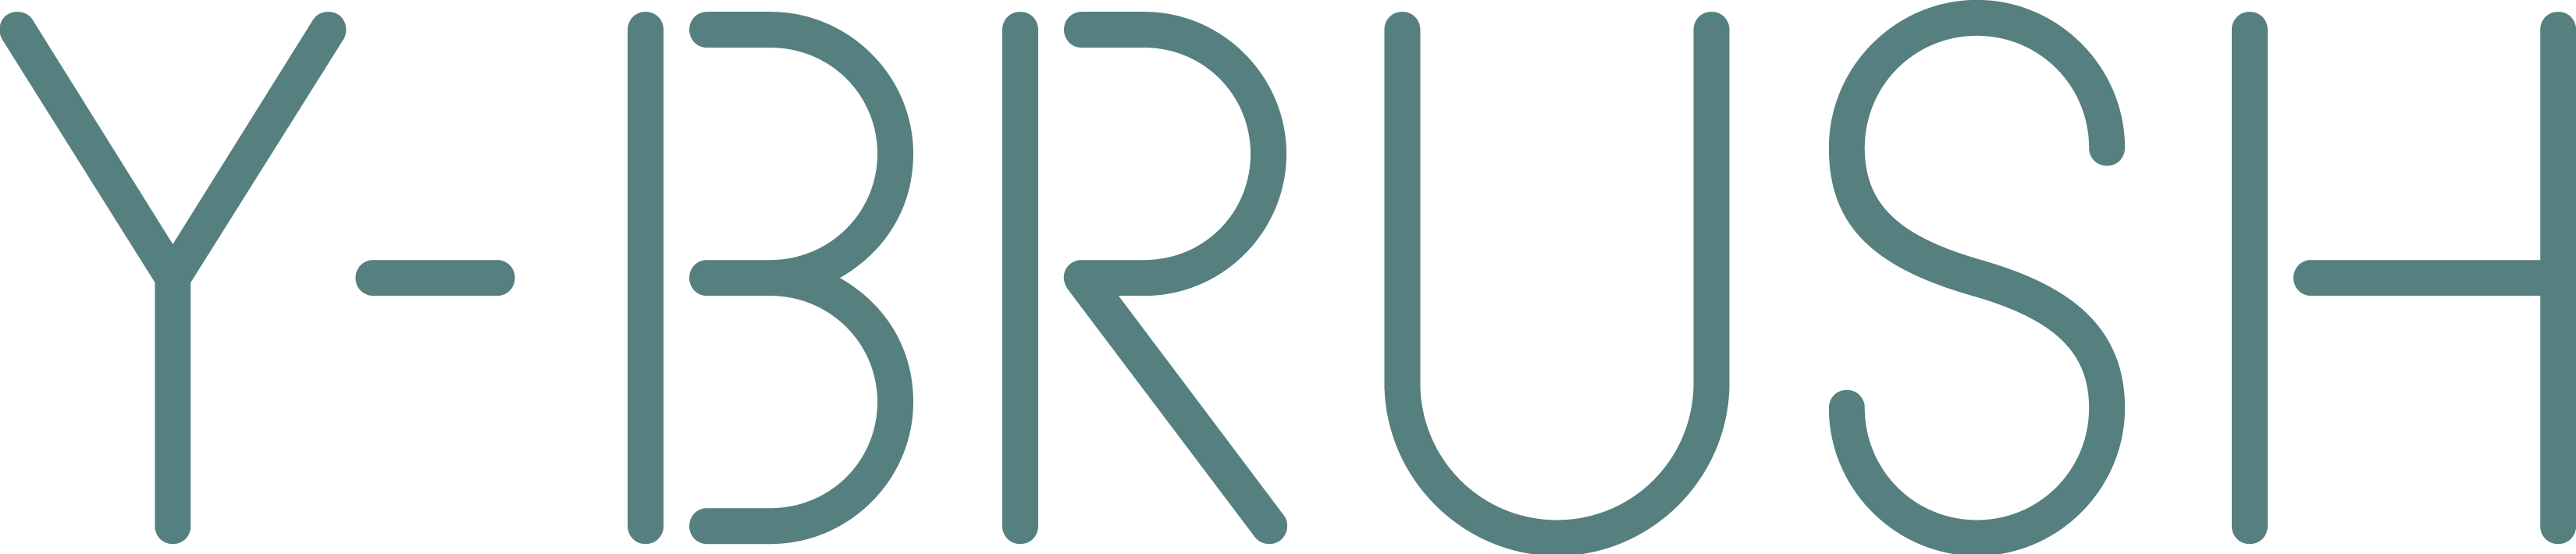 logo-ybrush